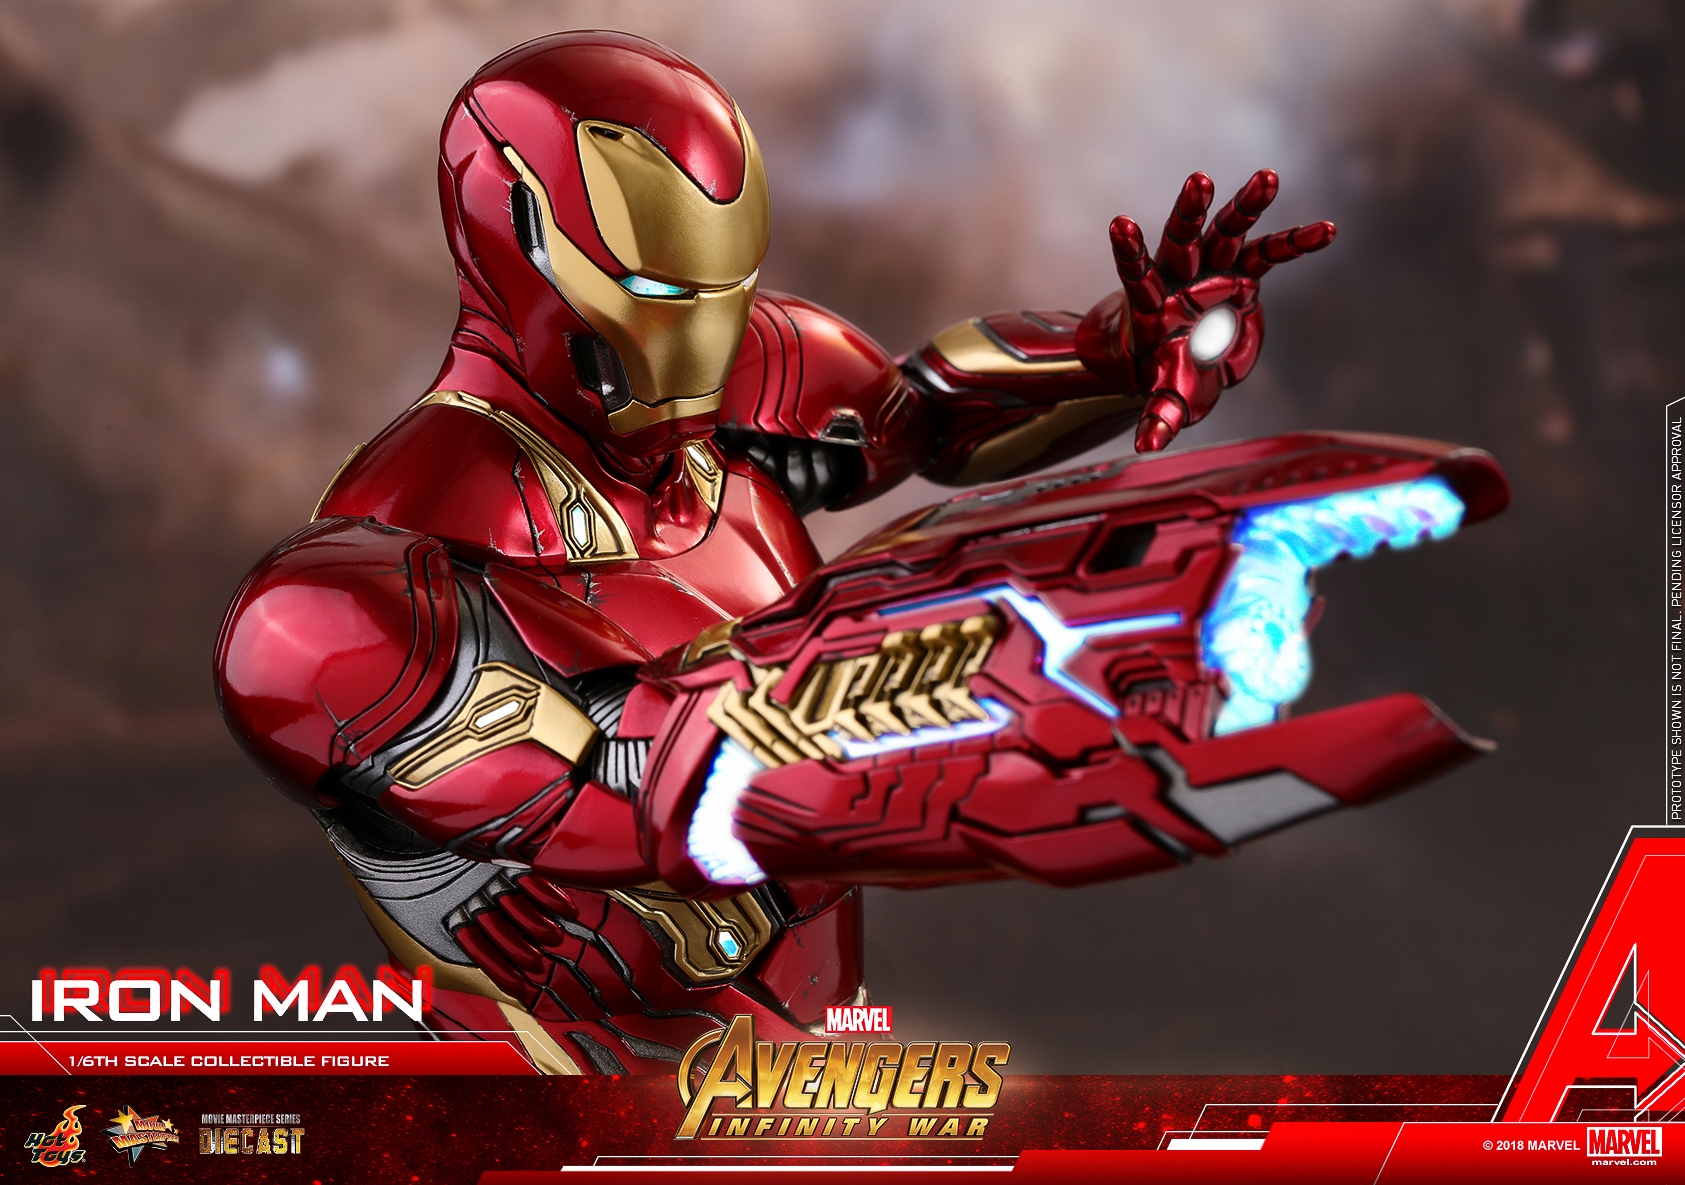 Hot-Toys-MMS473D23-Avengers-Infinity-War-Iron-Man-Collectible-Figure-024.jpg